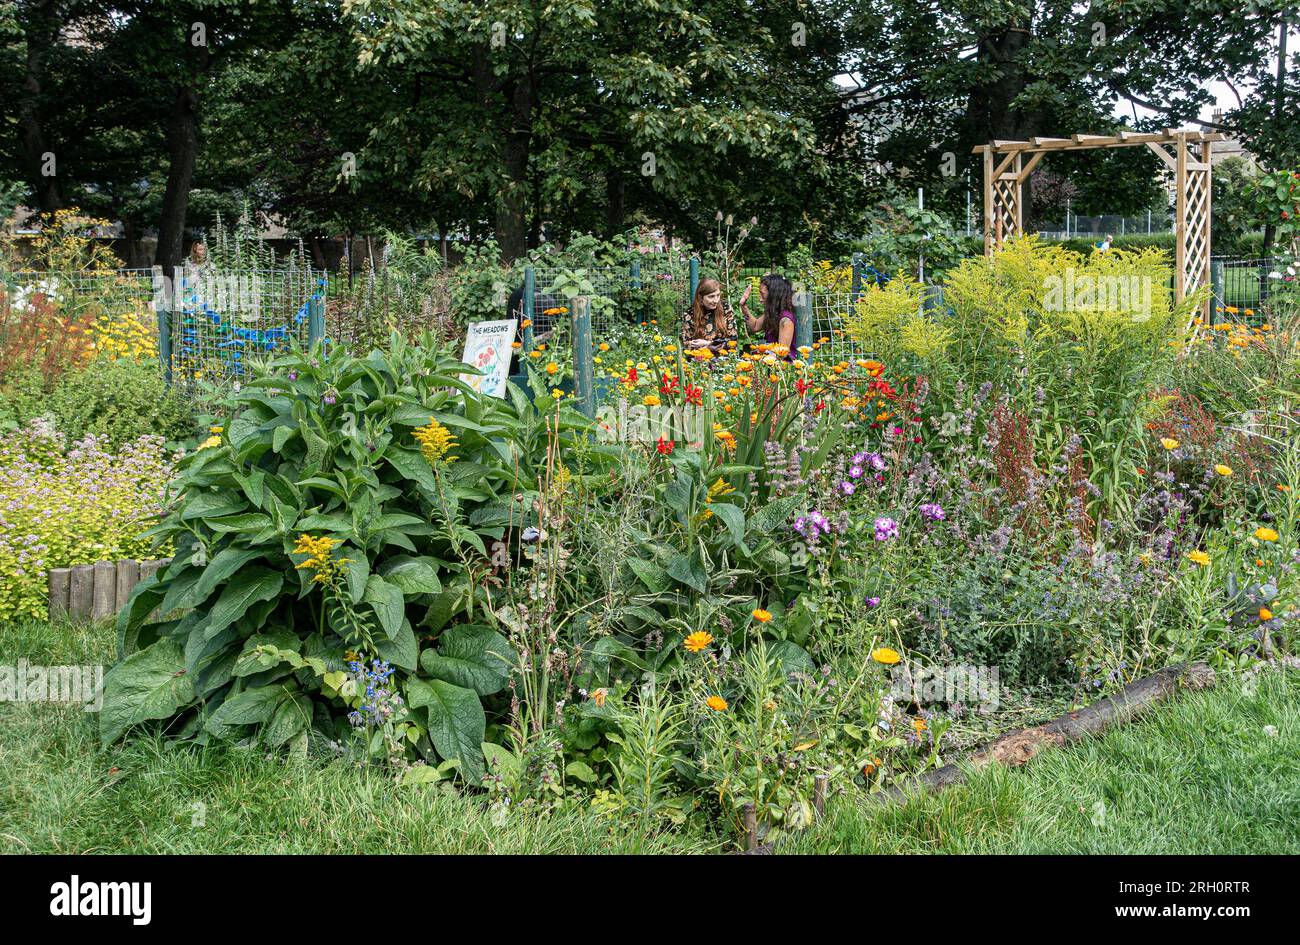 Uno dei giardini della comunità nei Meadows Community Gardens, nel centro di Edimburgo, in Scozia, che furono fondati nel 2017 da Greening Our Street. Foto Stock